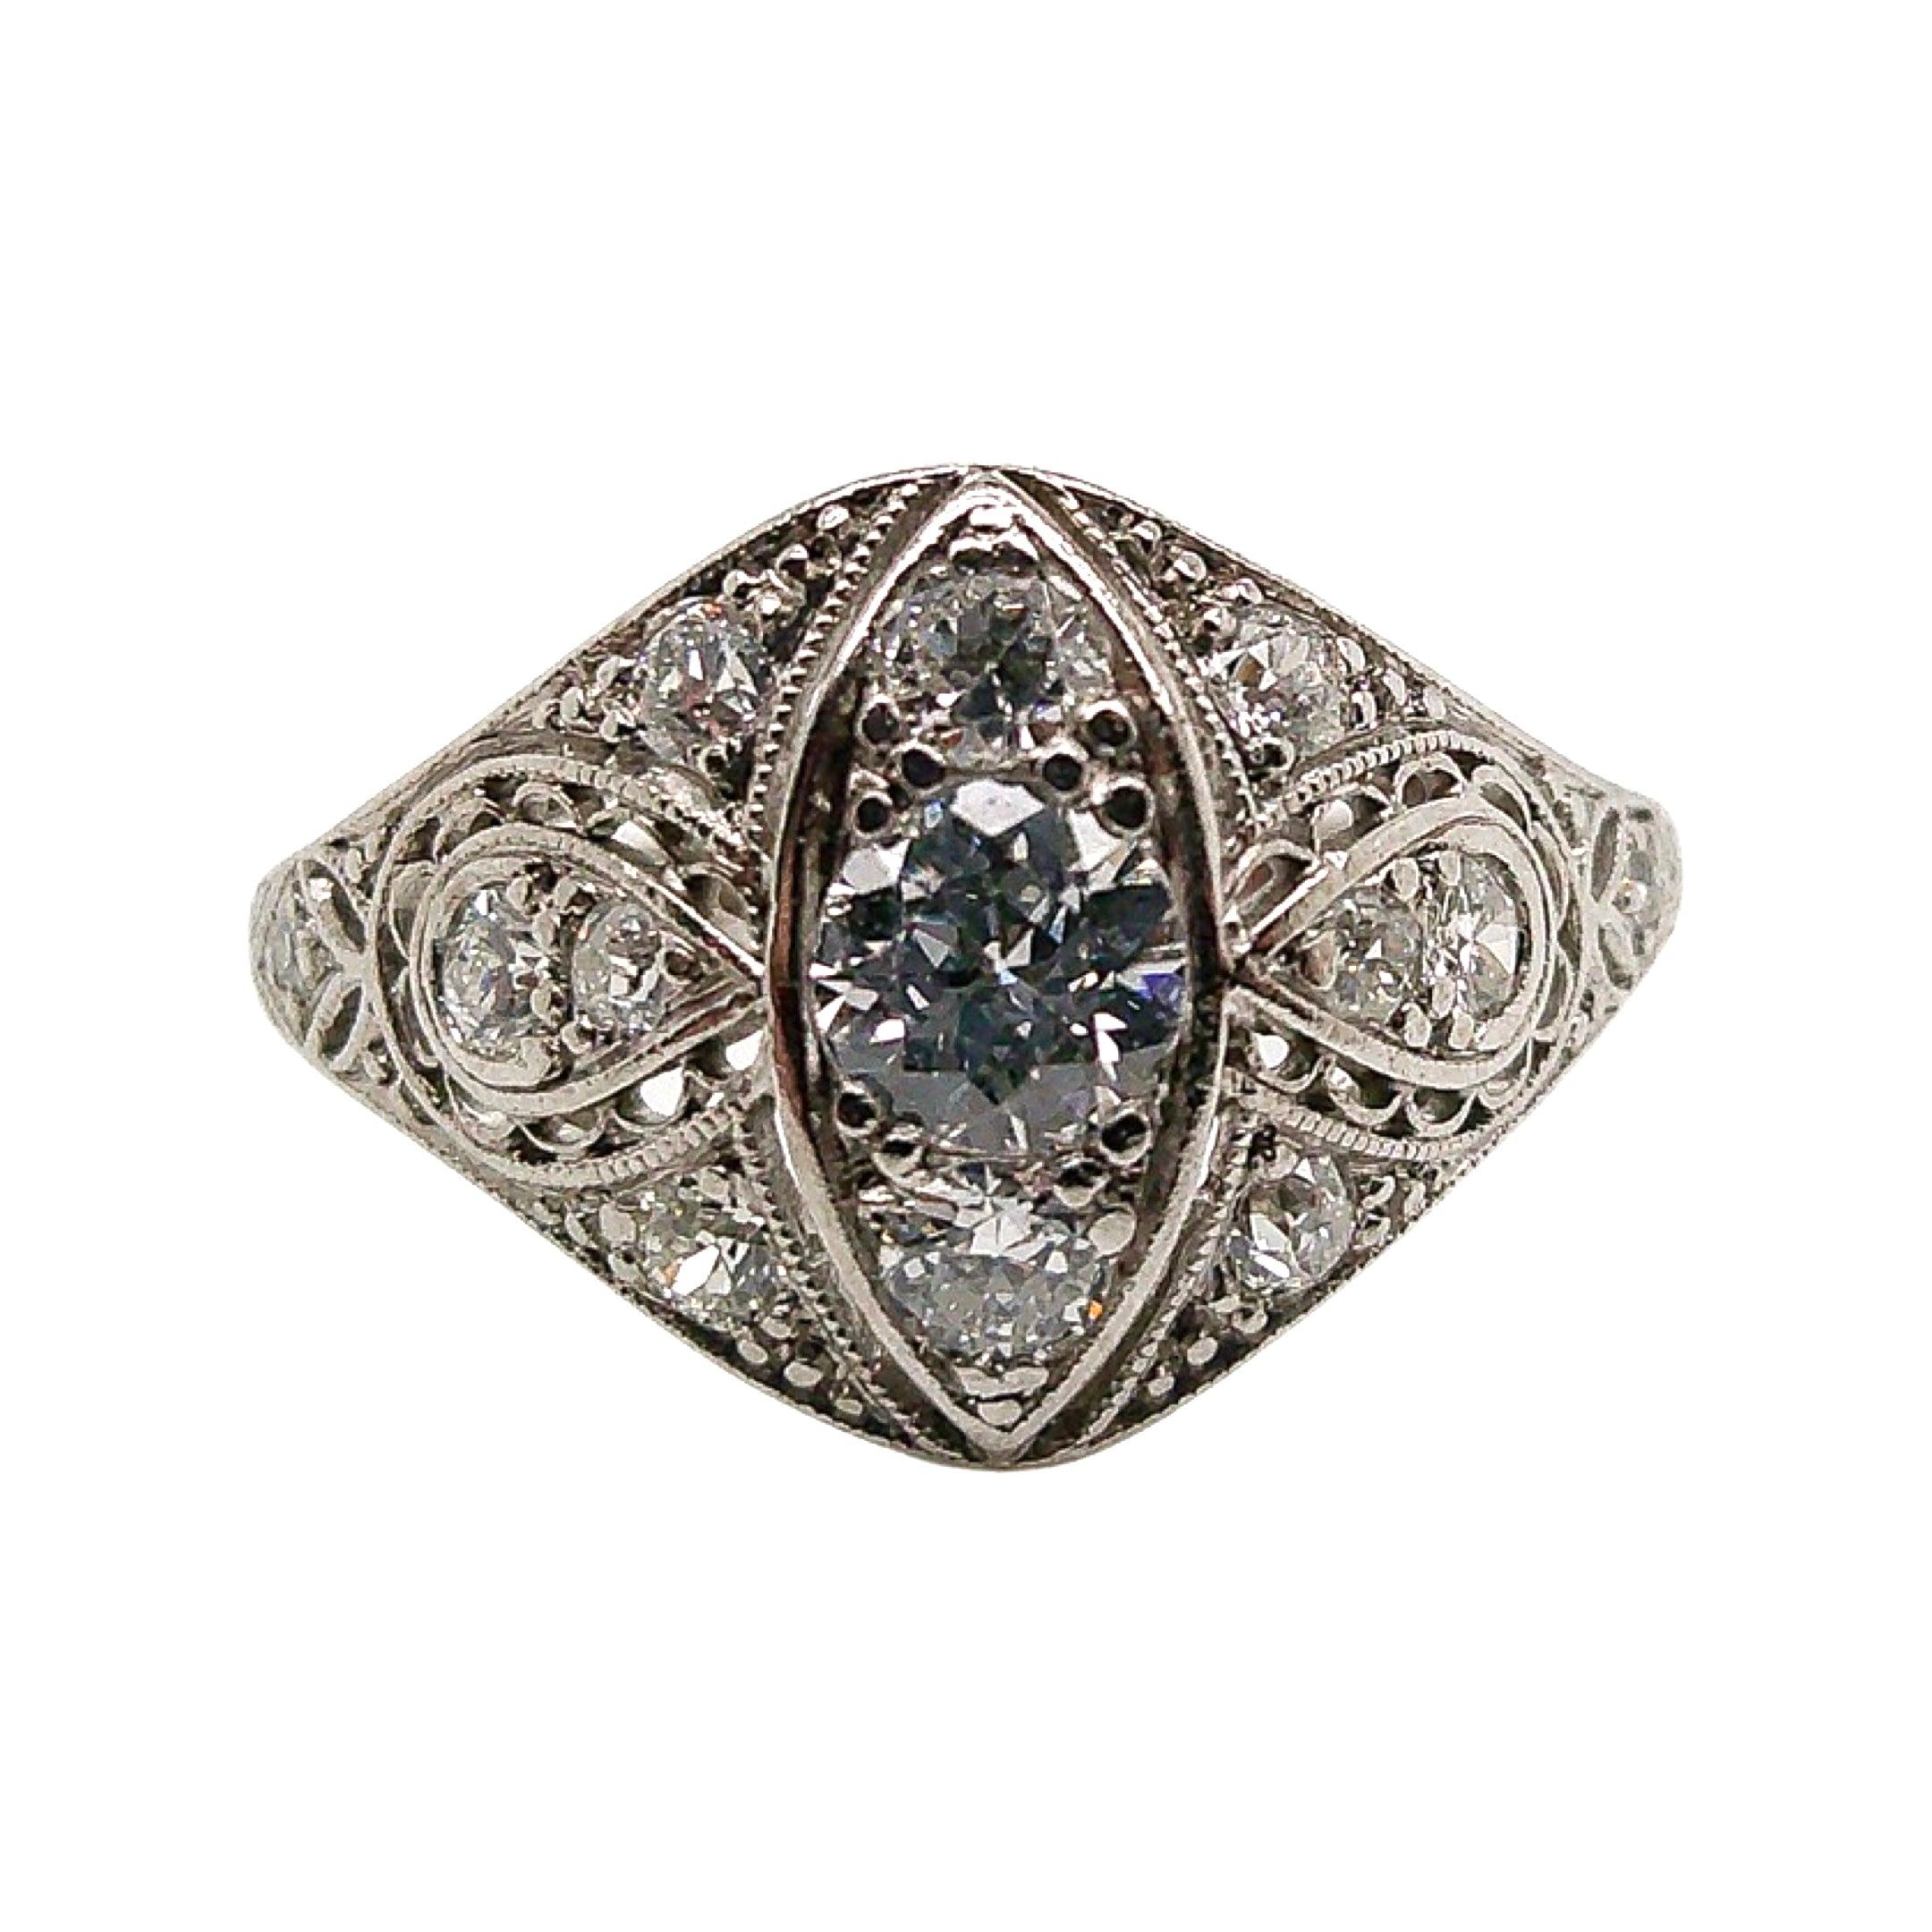 Dieses antike Stück wurde irgendwann während der Edwardianischen Designperiode (1900-1920) handgefertigt. Dieser skurrile Ring aus Platin fängt mit seiner zeitlosen Schönheit und den raffinierten Details die Essenz der edwardianischen Epoche ein.
